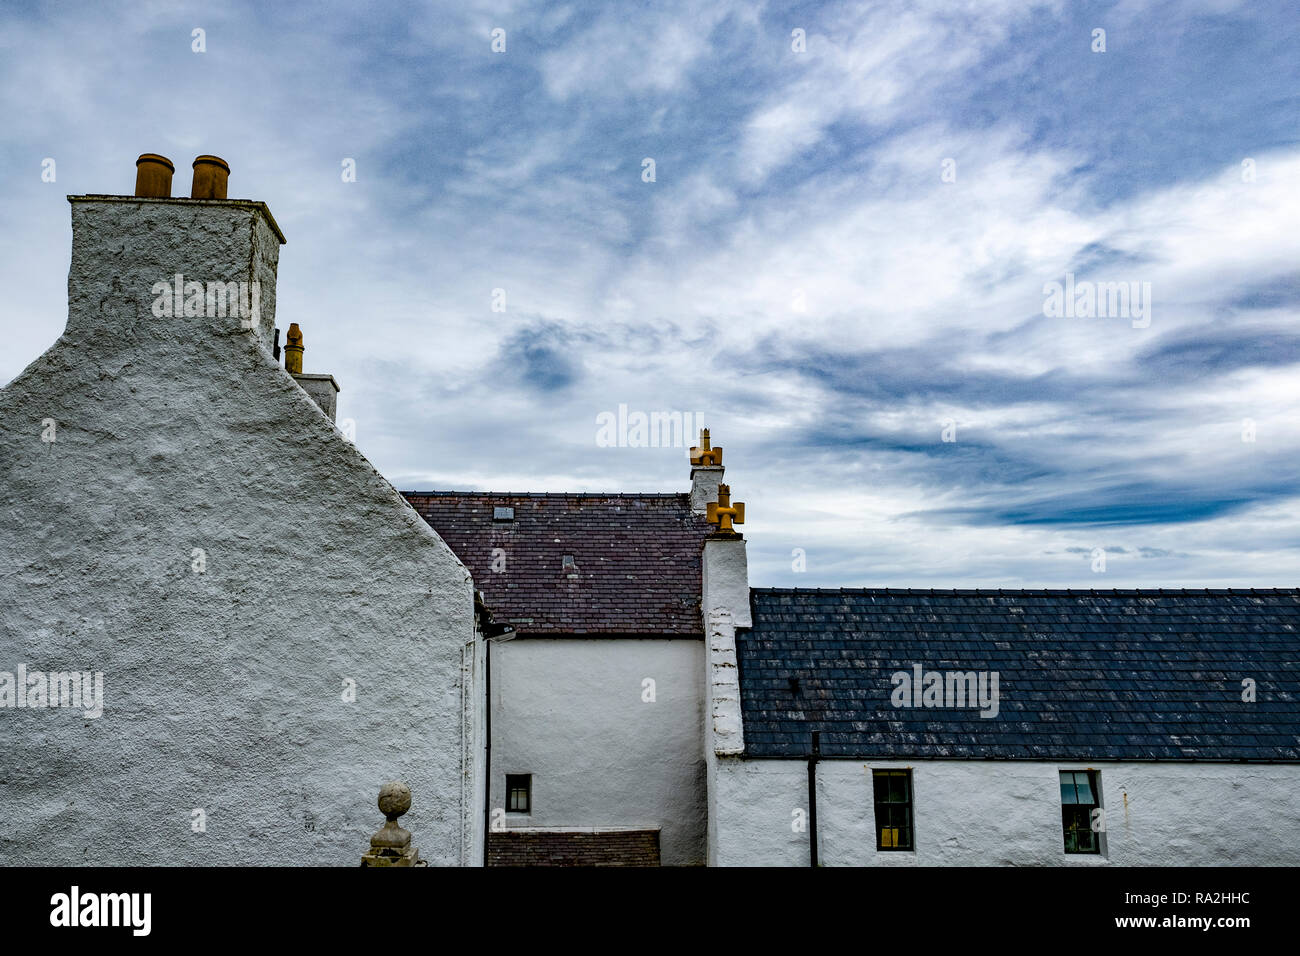 Profil de l'architecture d'un manoir traditionnel avec cheminée et la ligne de toit dans les îles Shetland de l'Ecosse Banque D'Images